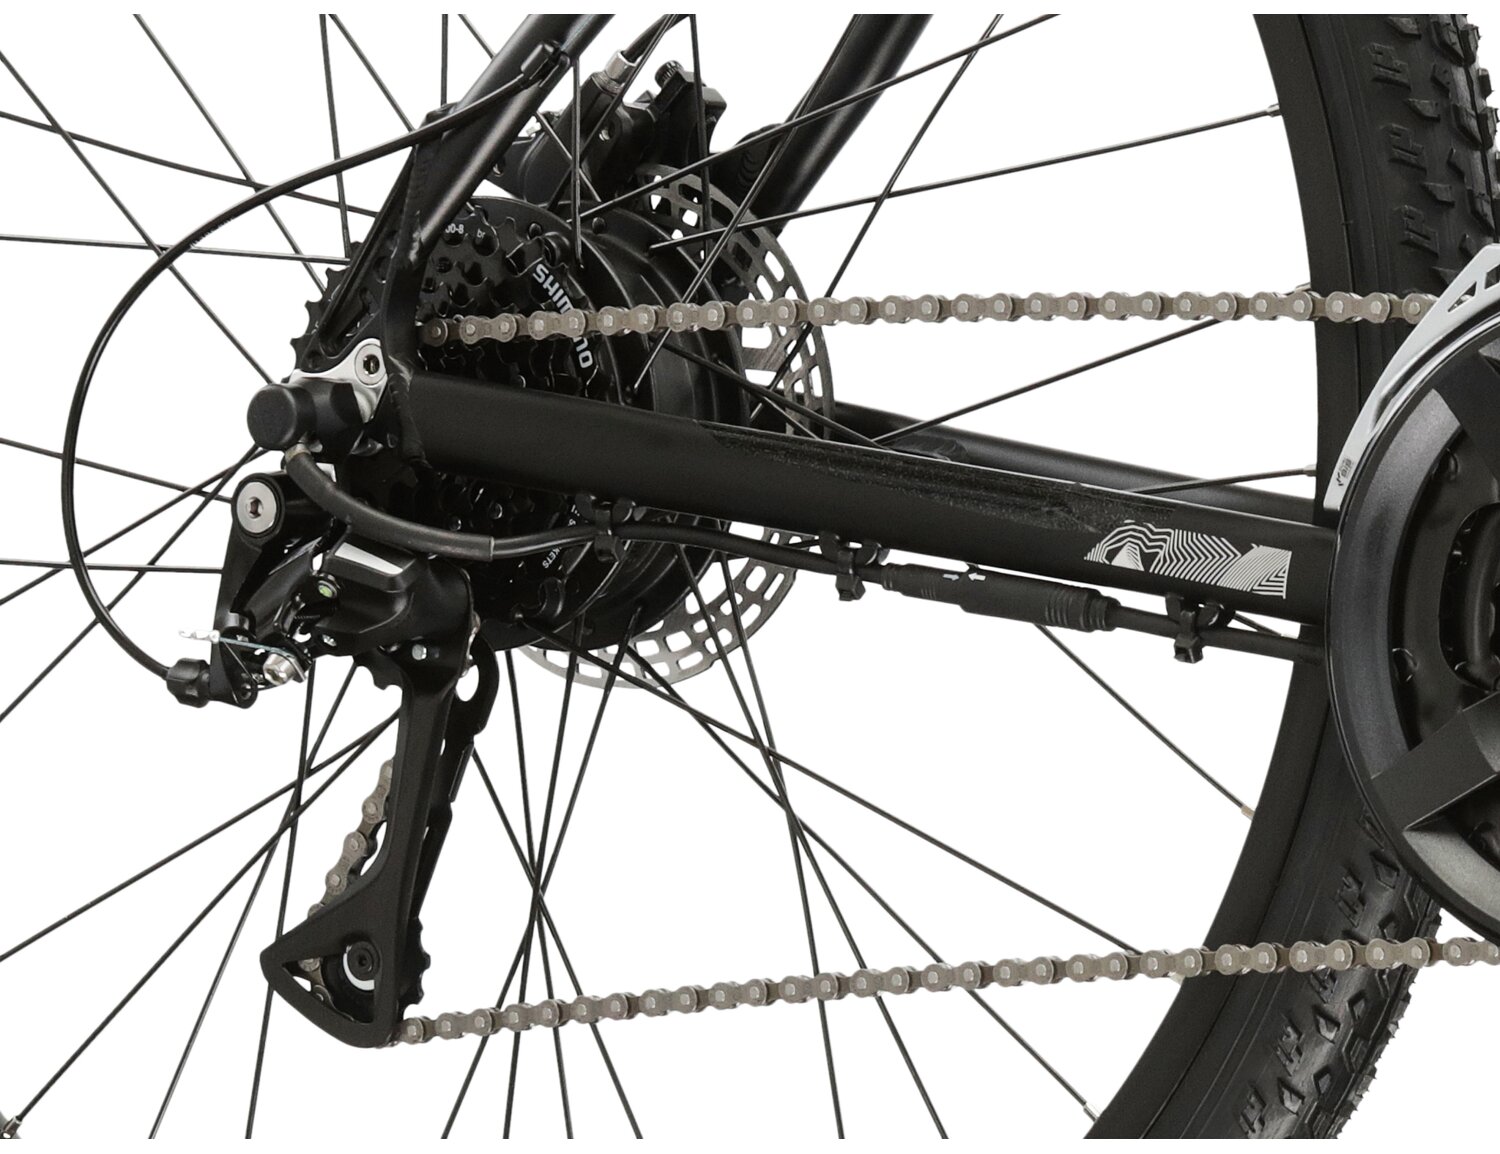  Tylna ośmiorzędowa przerzutka Shimano Acera RD M3020, hydrauliczne hamulce tarczowe oraz silnik Bafang G120 w rowerze elektrycznym górskim MTB Kross Berg Boost 1.0 